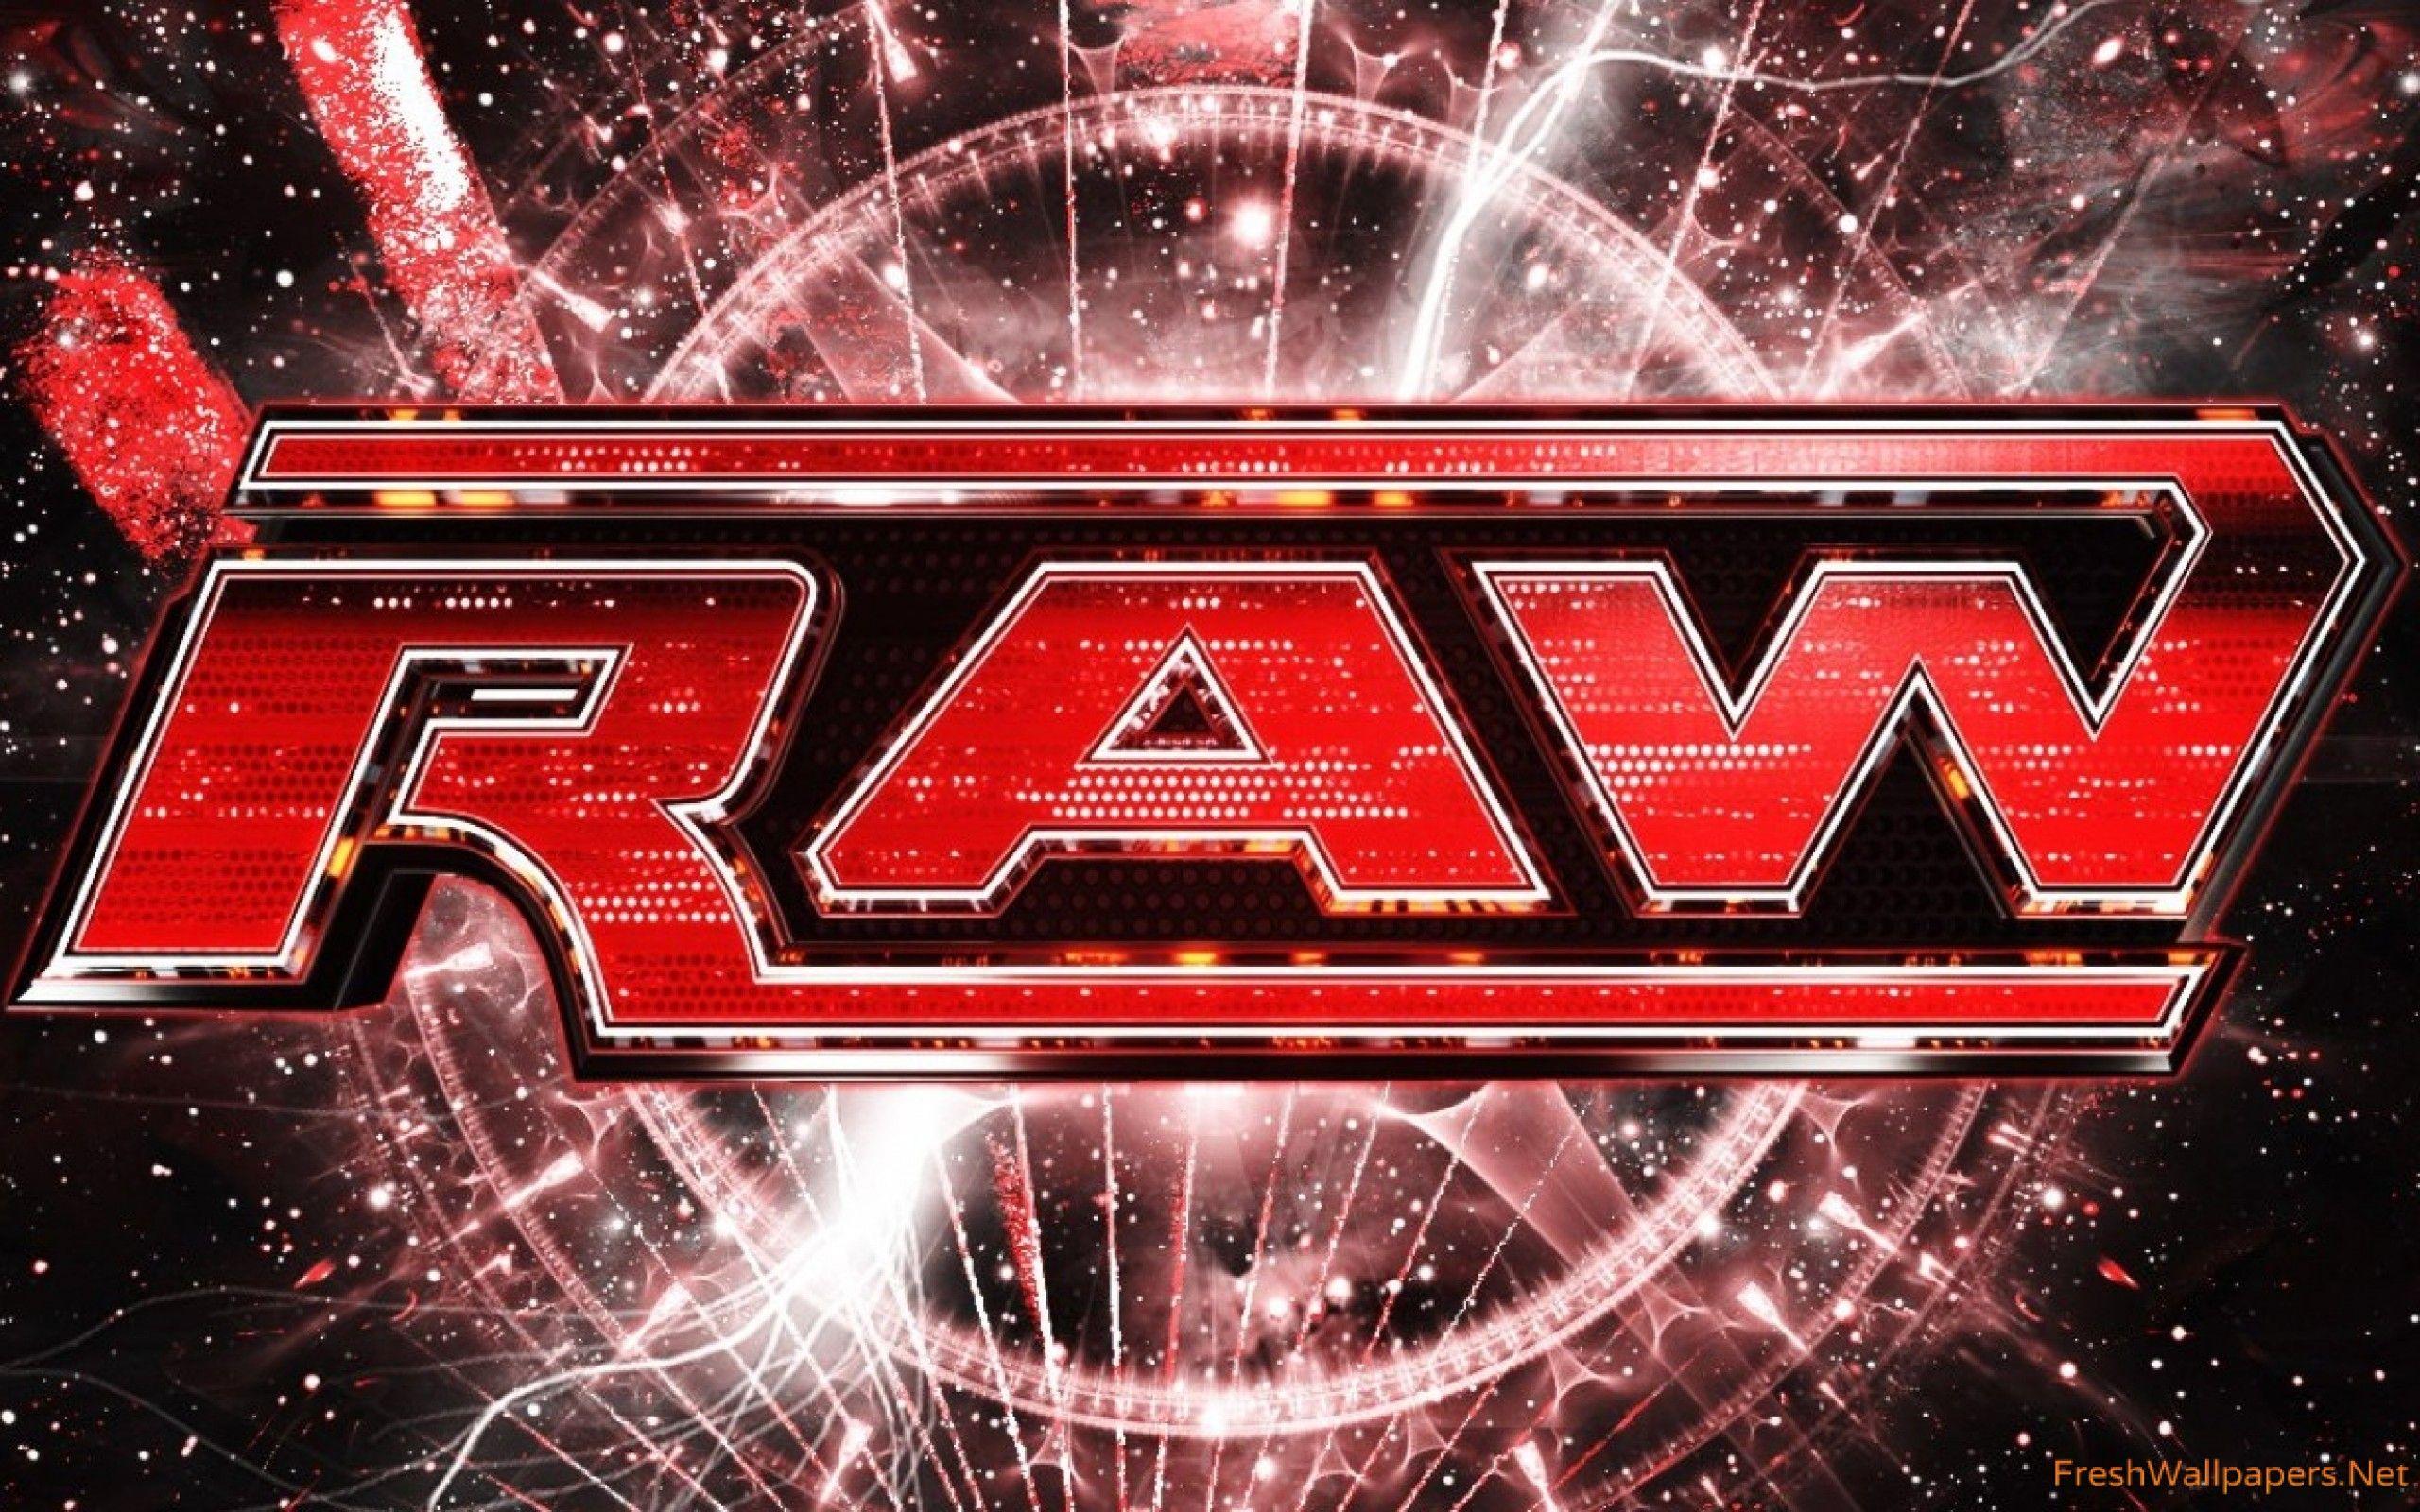 Wwe Raw  Wwe Raw wwe raw logo HD wallpaper  Pxfuel